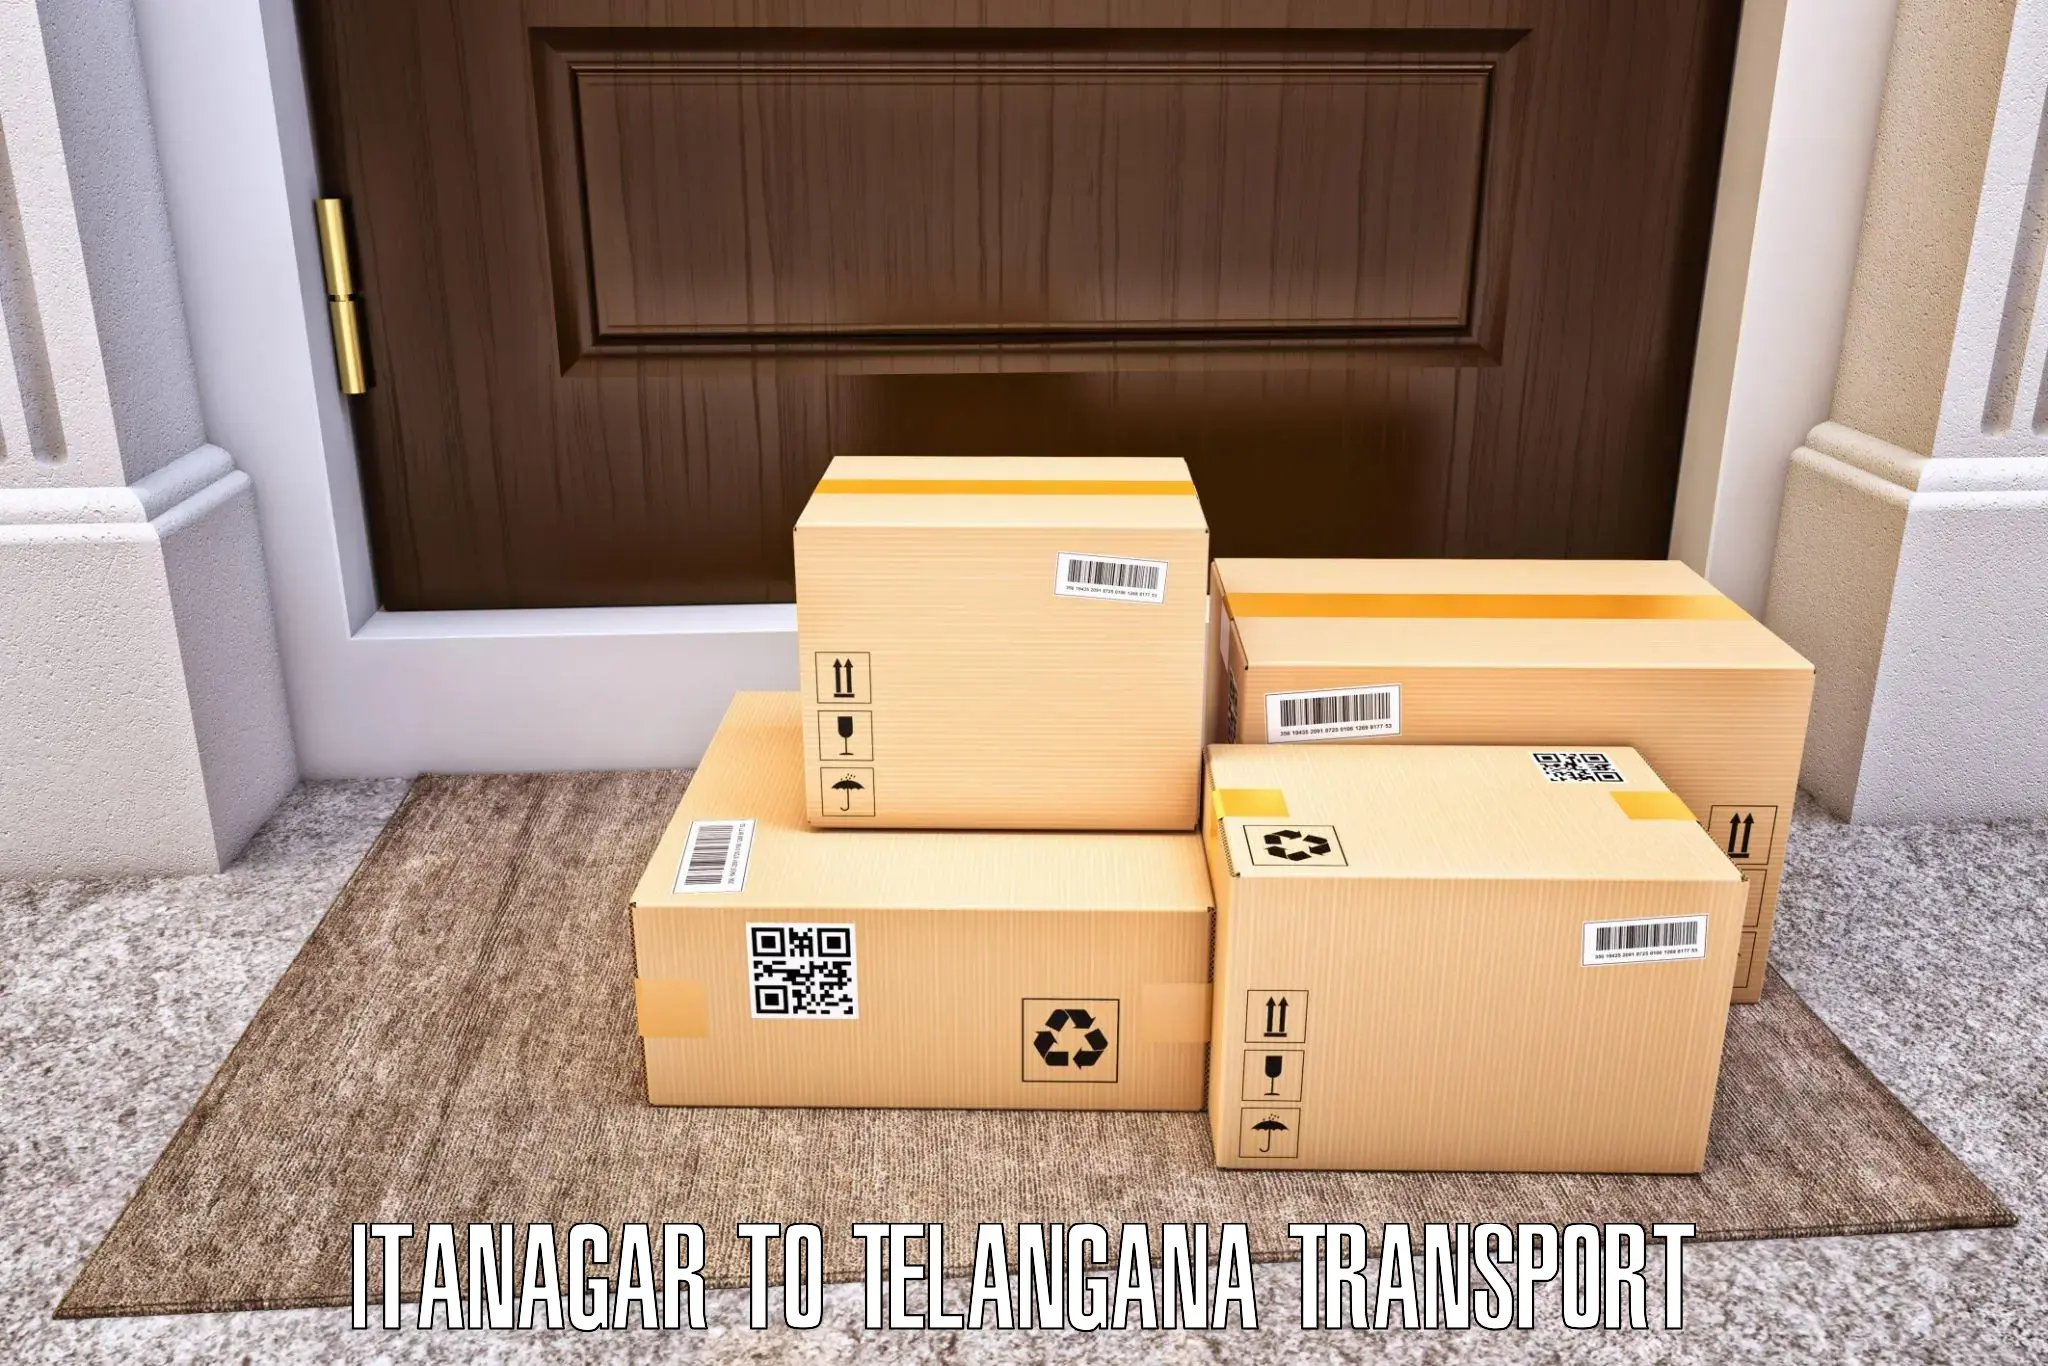 Bike transfer Itanagar to Tallada